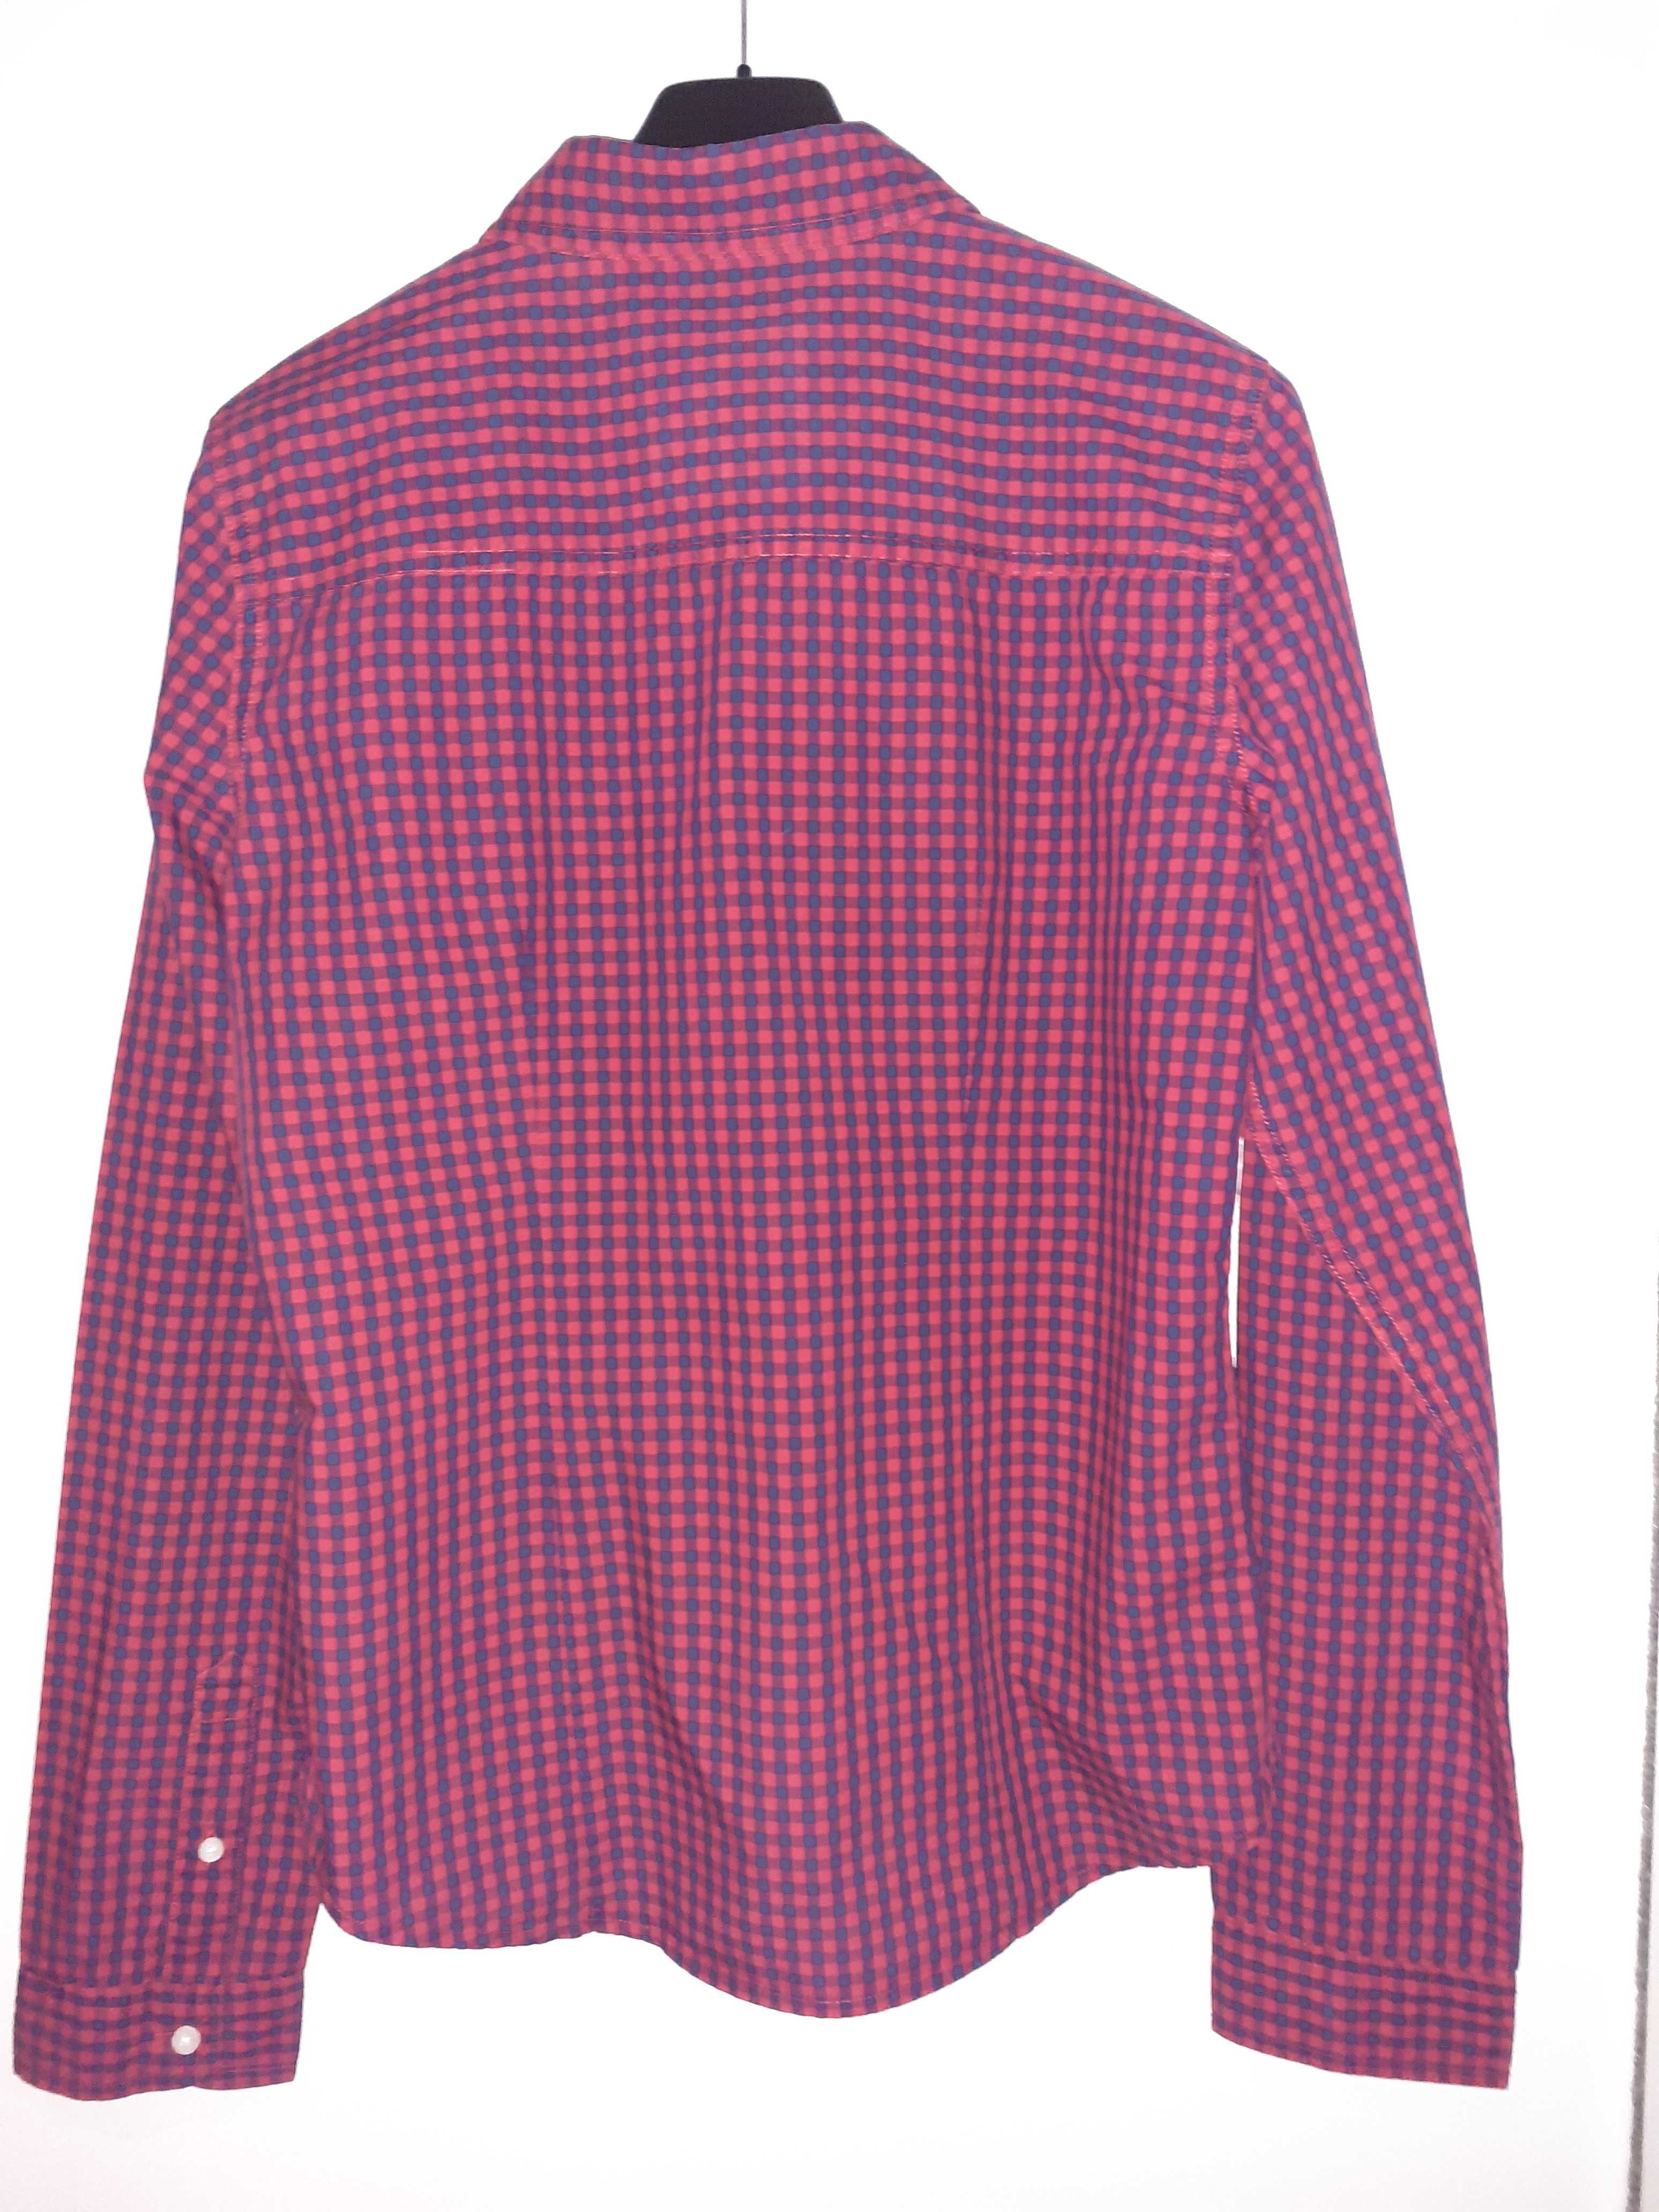 Abercrombie & Fitch H&M koszula kratka S 164 170